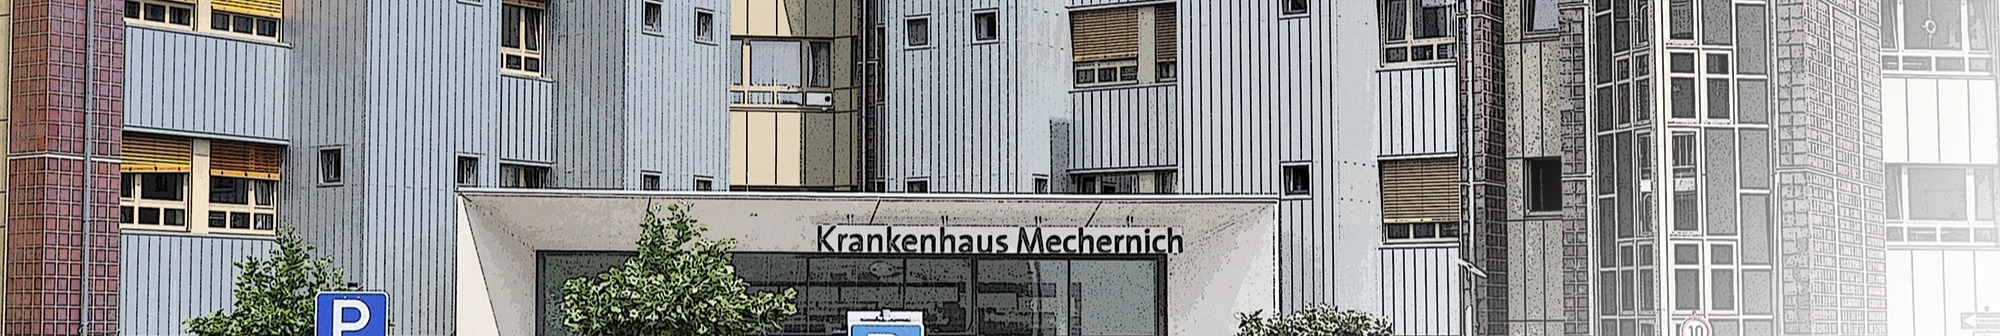 Kreiskrankenhaus Mechernich GmbH background